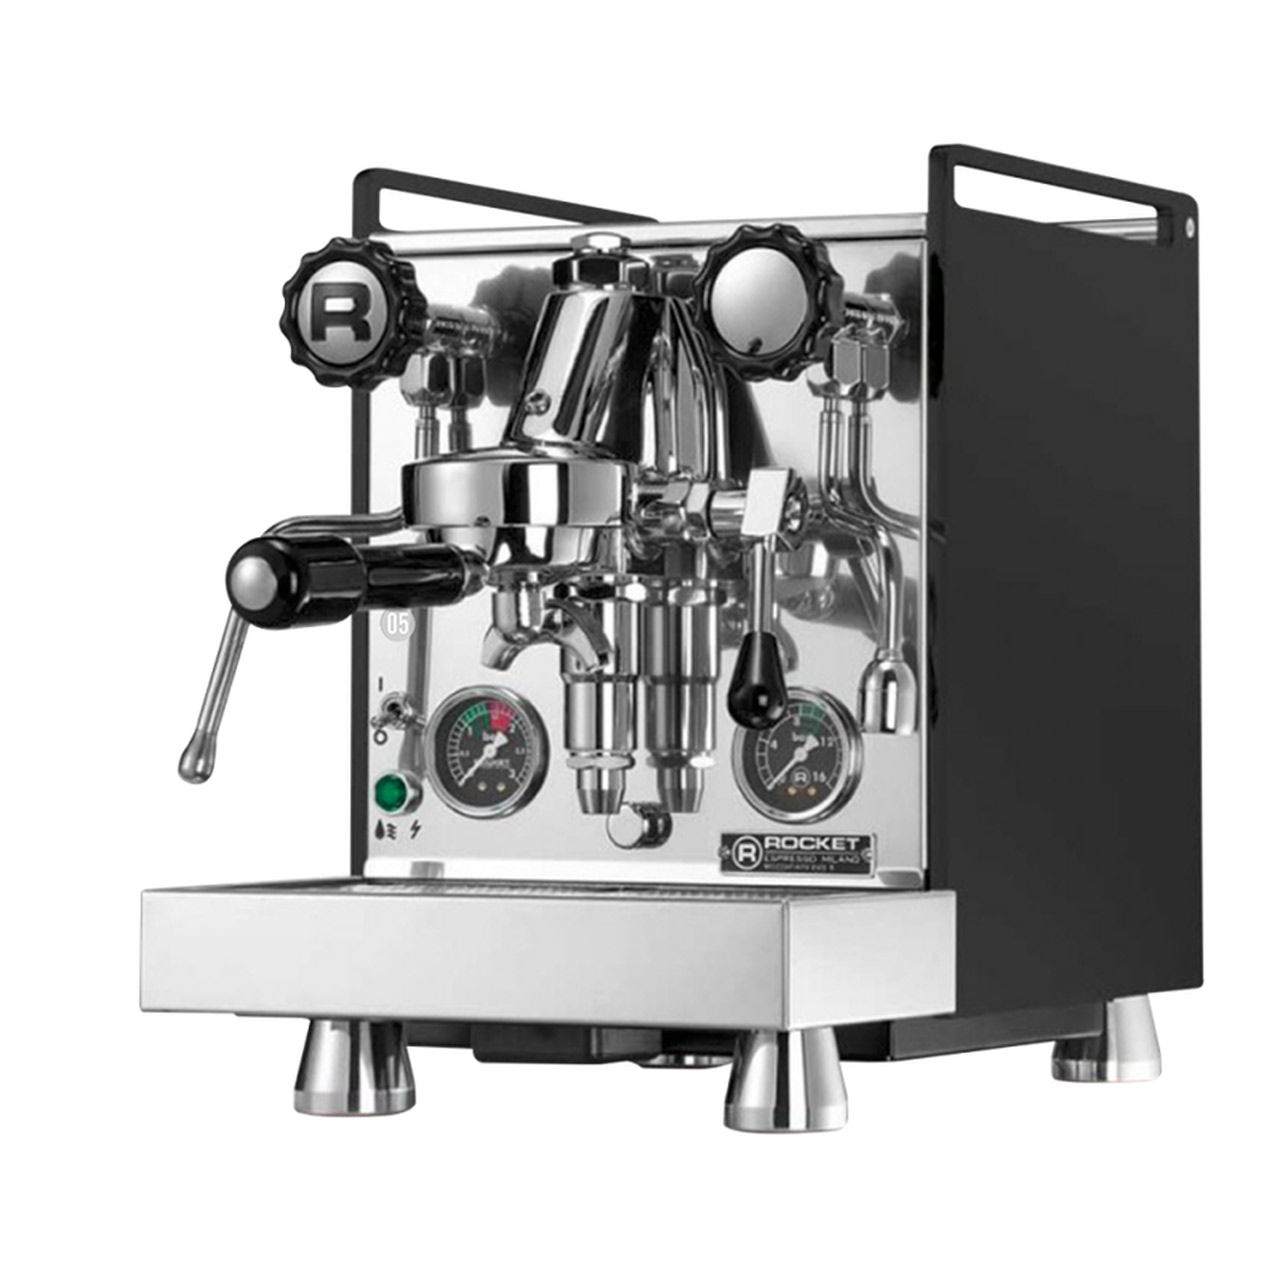 Rocket Mozzafiato Cronometro V Semi-Automatic Espresso Machine with PID & Shot Timer - Black